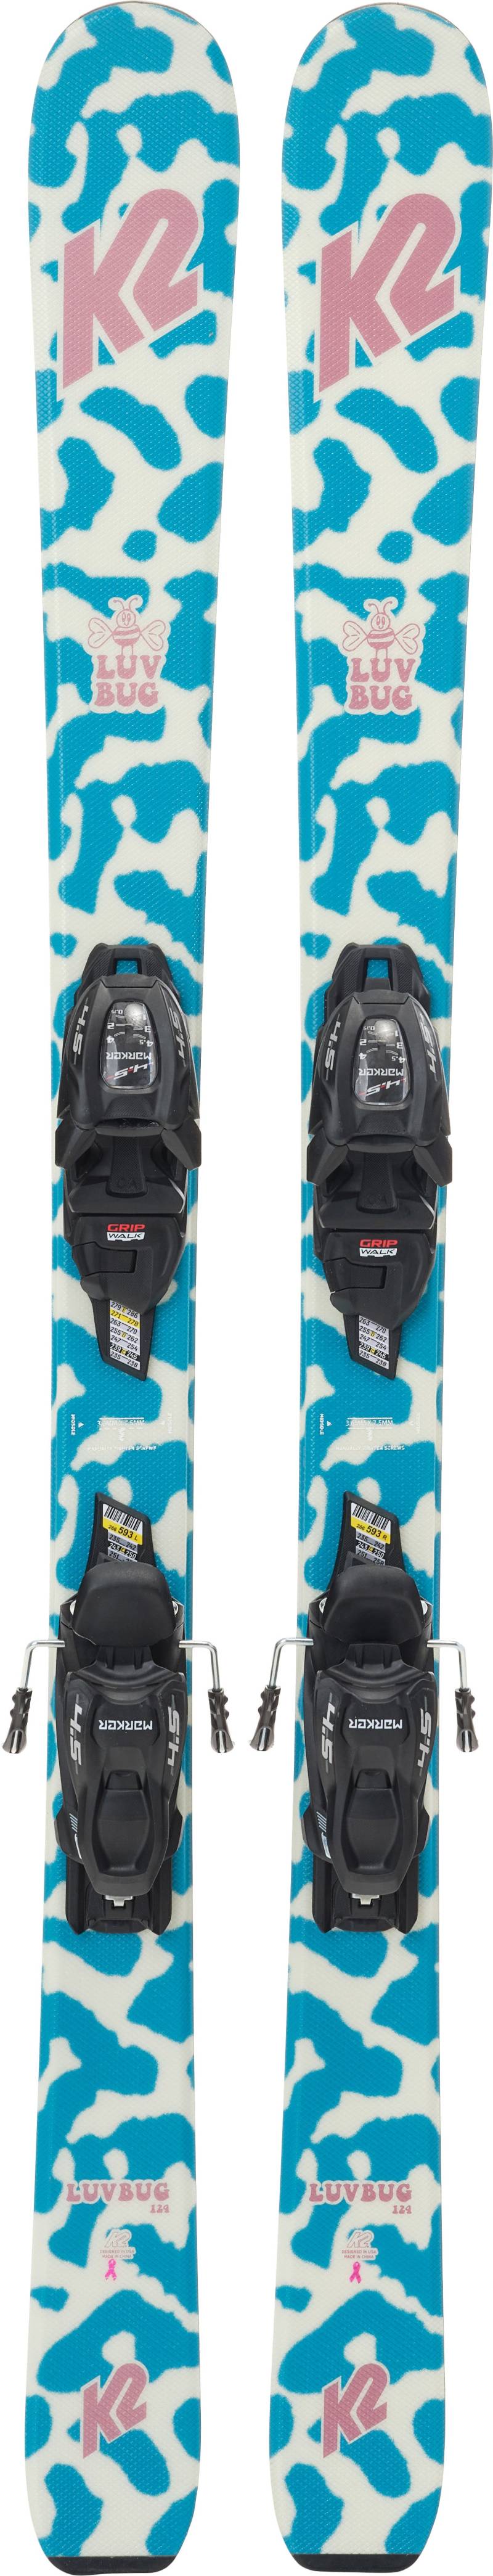 K2 Luv Bug Fdt 4.5 Skier inkl. Bindungen, 124 cm von K2